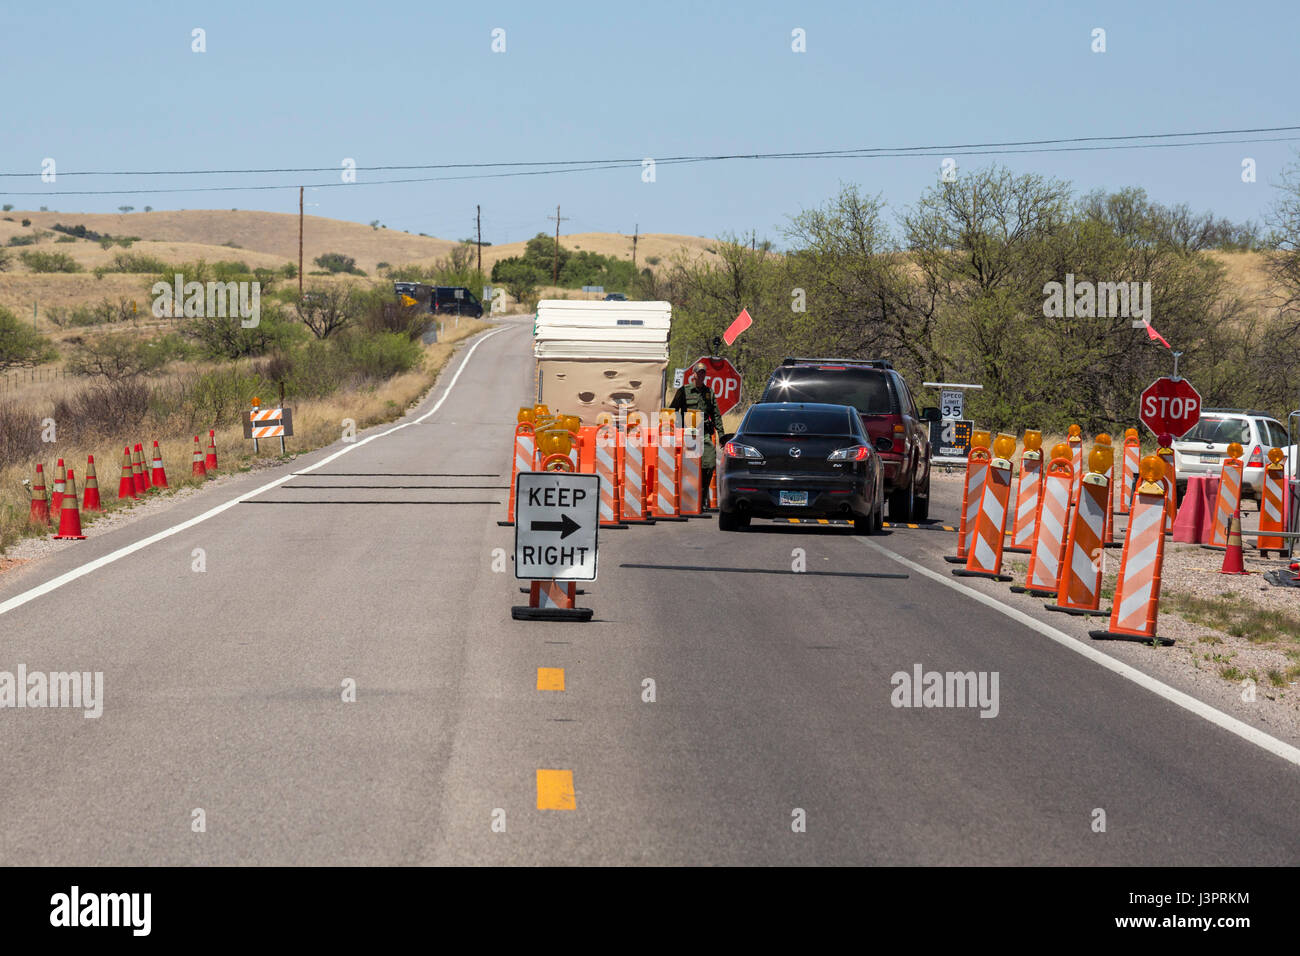 Arizona, Sonoita - Une patrouille frontalière américaine de contrôle sur l'autoroute 83 l'Arizona, à environ 25 milles au nord de la frontière mexicaine. Banque D'Images